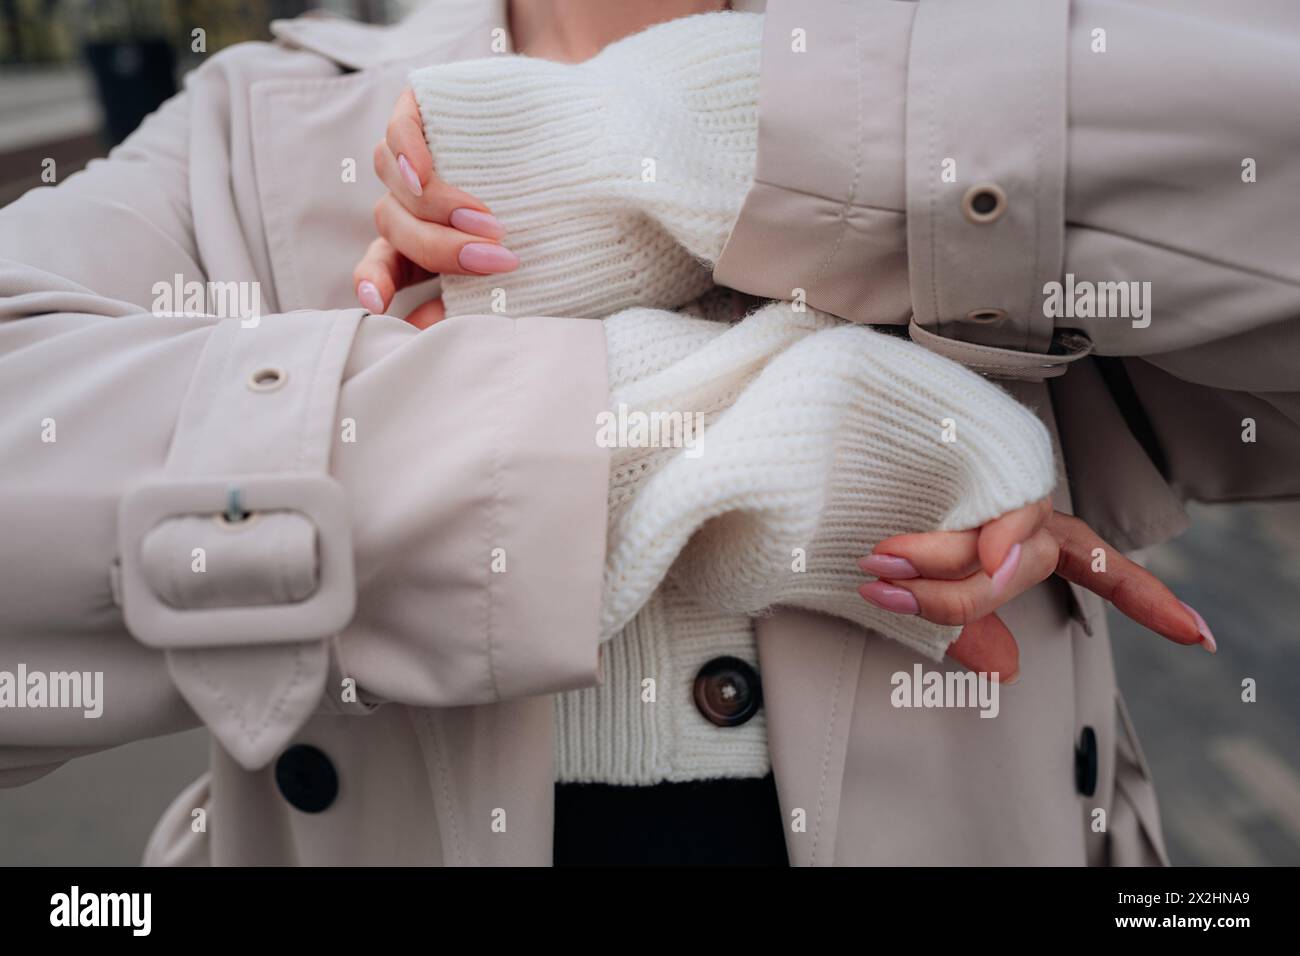 Détails de mode en tissu de style urbain d'un pull boutonné blanc tricoté et trench-coat beige pour femme. Mode urbaine contemporaine Banque D'Images